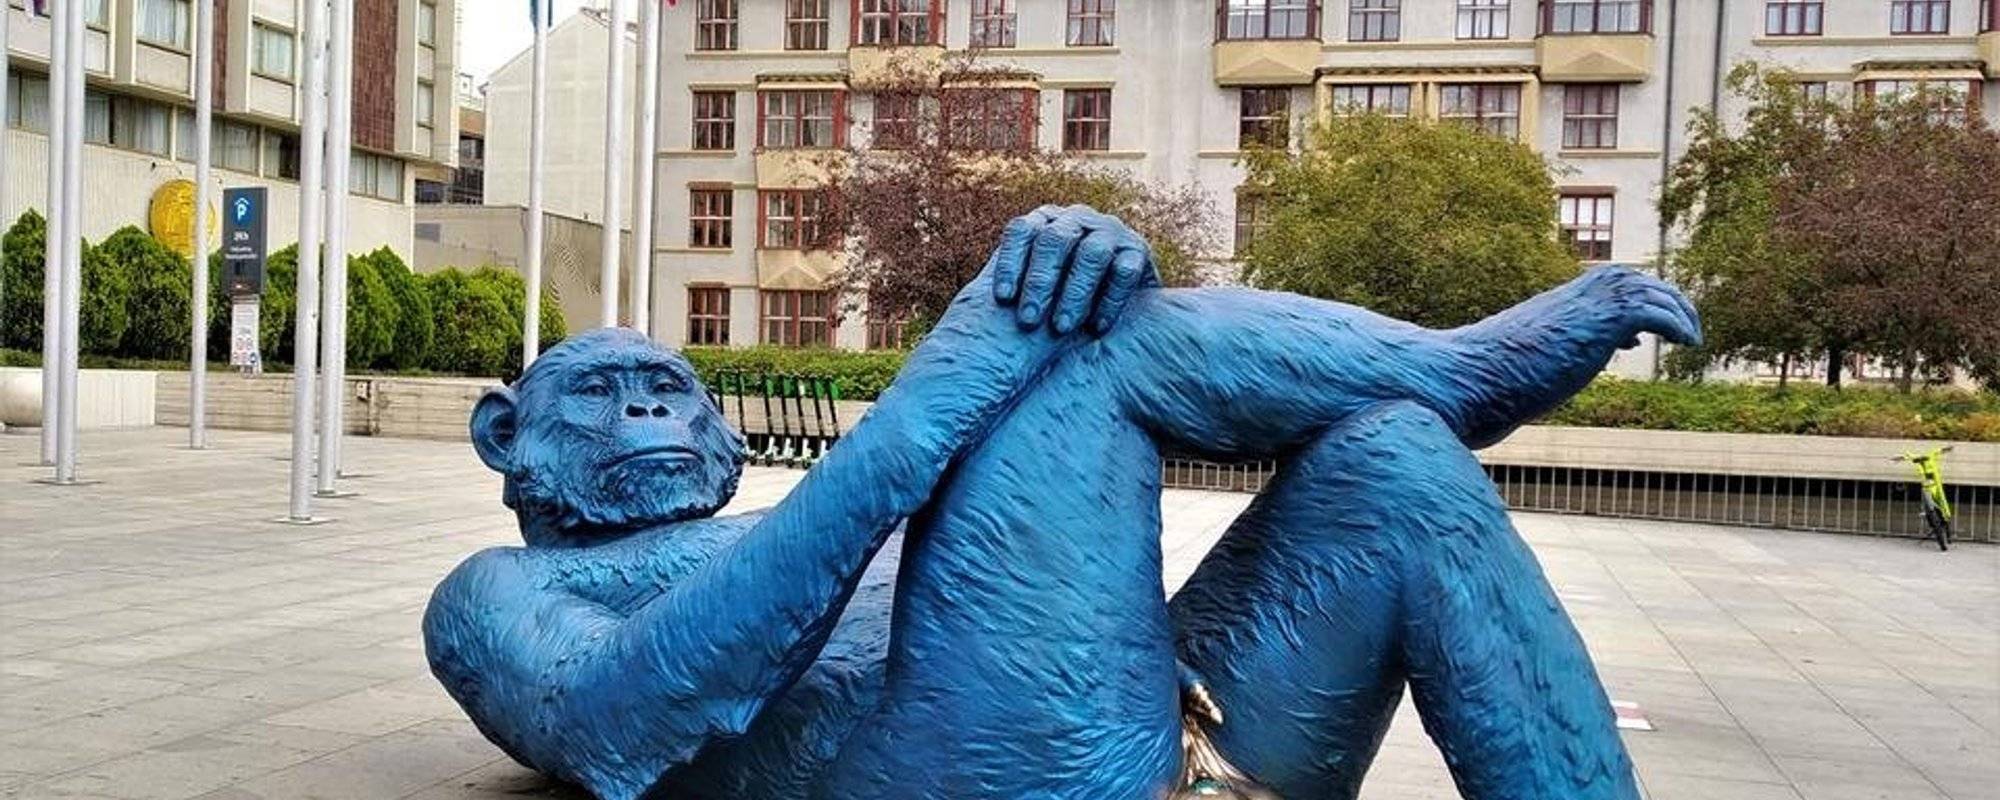 Art of Czech Republic: bizarre sculptures of Prague